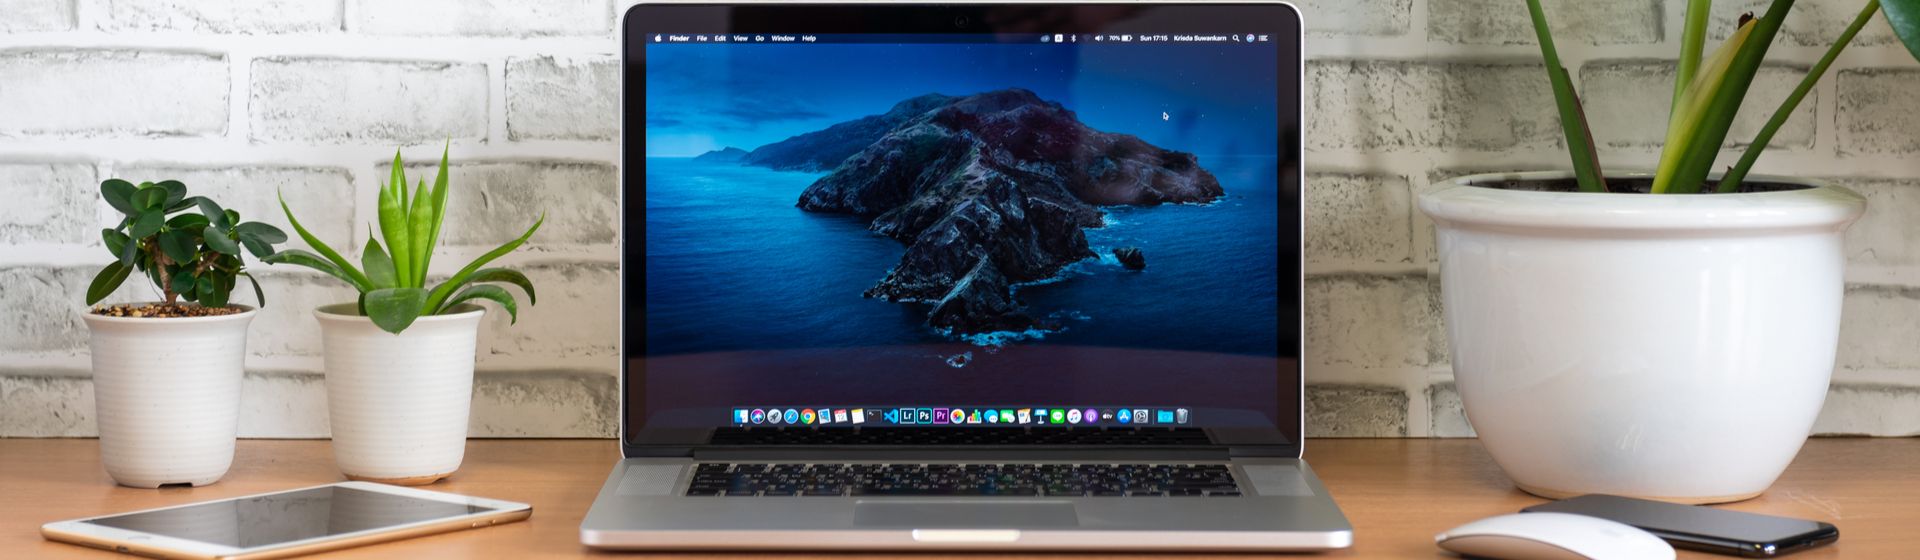 Macbook: quais são os melhores notebooks Apple 2021?